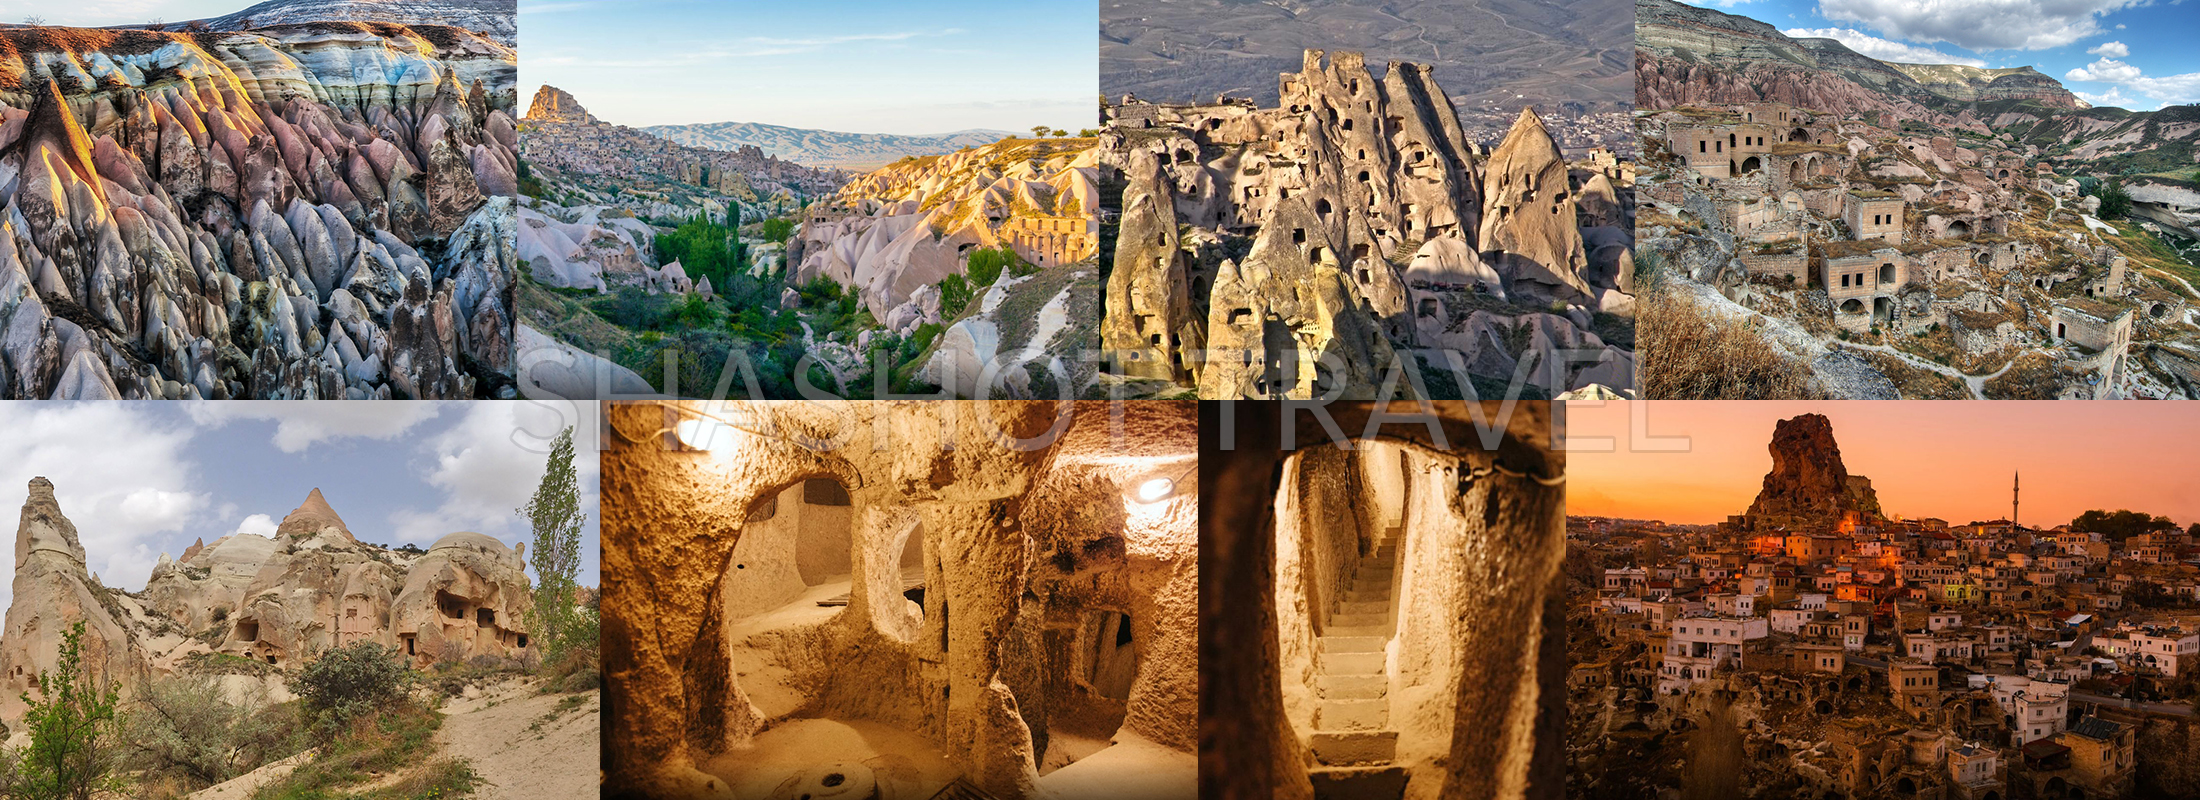 cappadocia-turkiye-shashot-travel-walking-hiking-tour